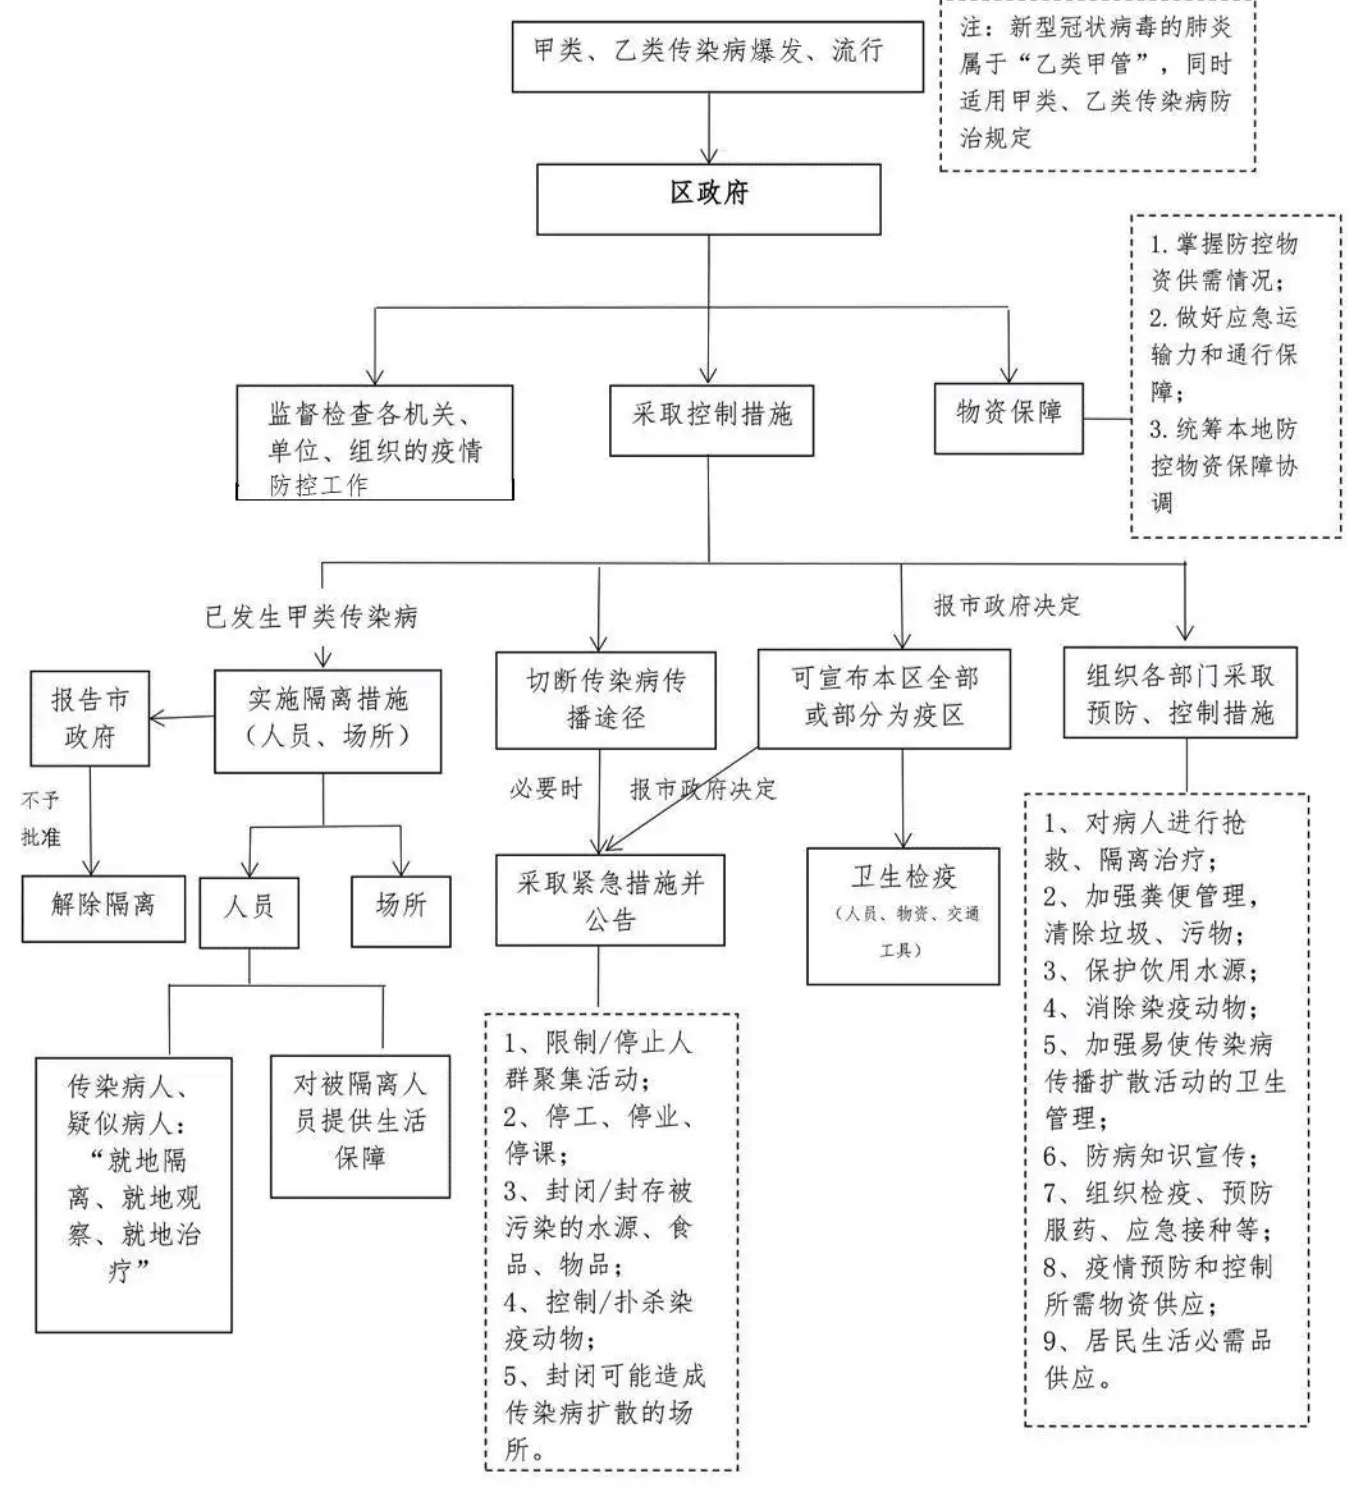 区县政府疫情控制工作流程图